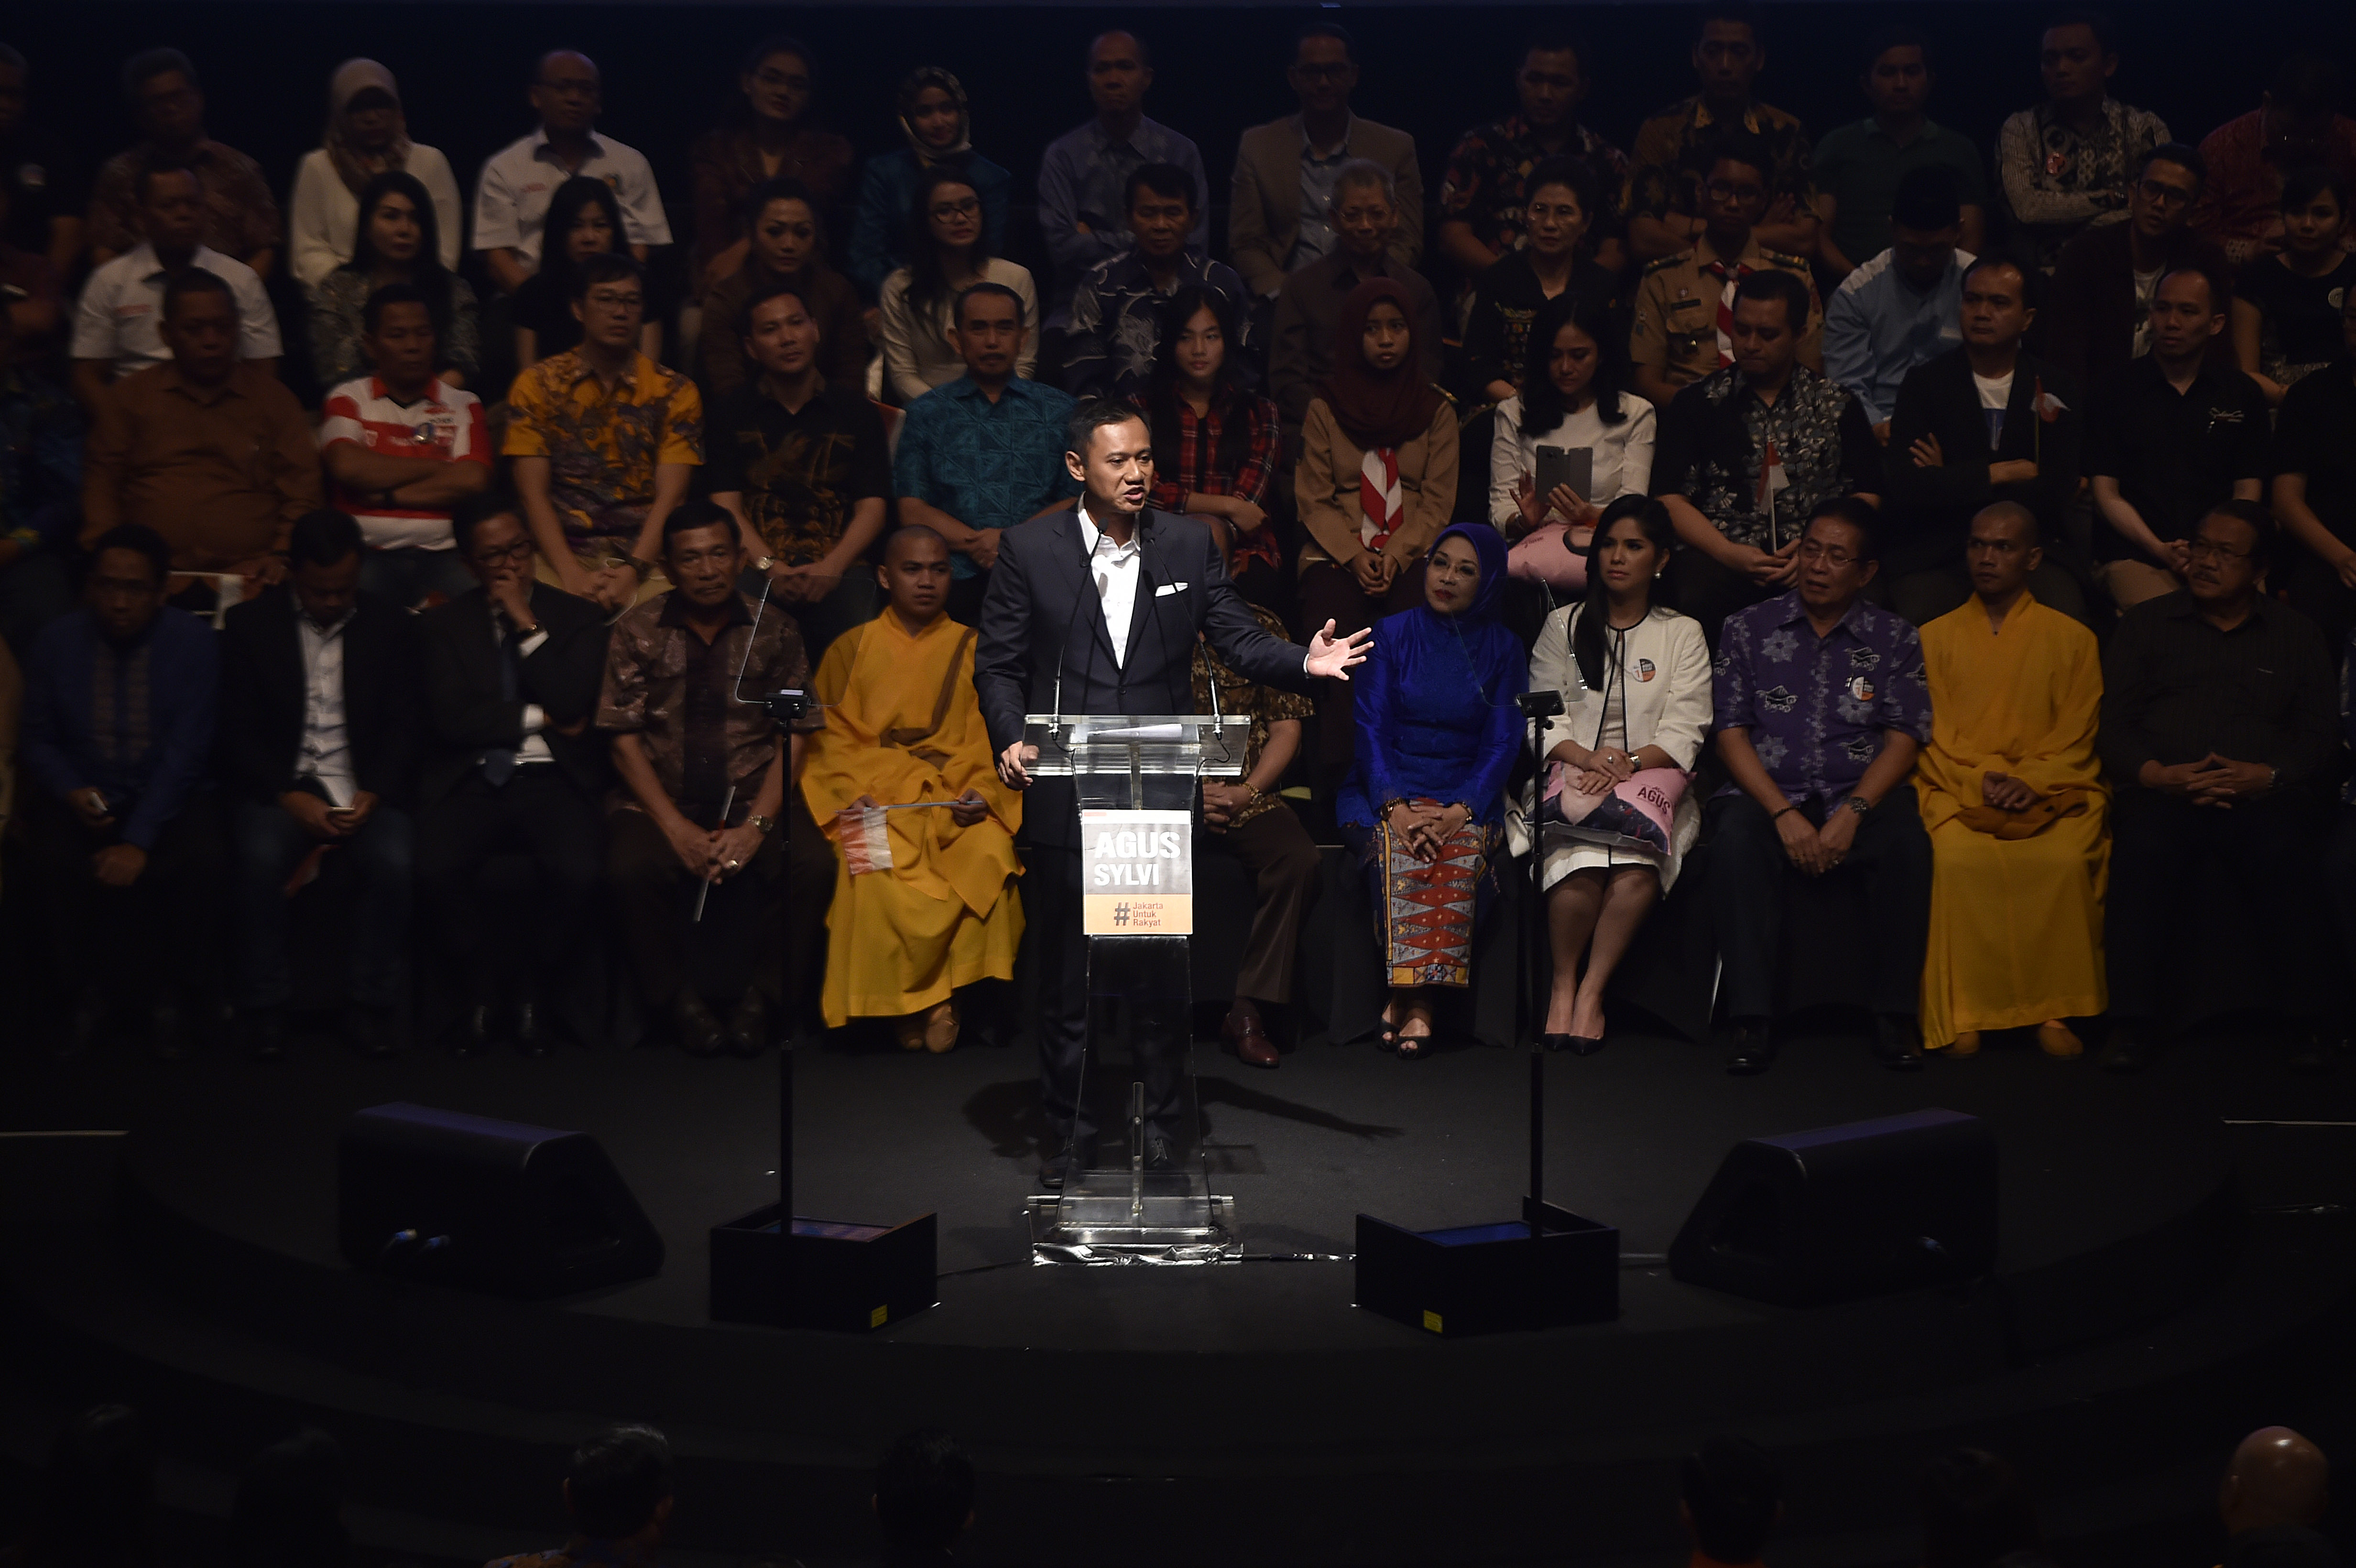 Calon Gubernur DKI Jakarta, Agus Yudhoyono, menyampaikan pidato politik di Jakarta, pada 30 Oktober 2016. Foto oleh Puspa Perwitasari/Antara
 